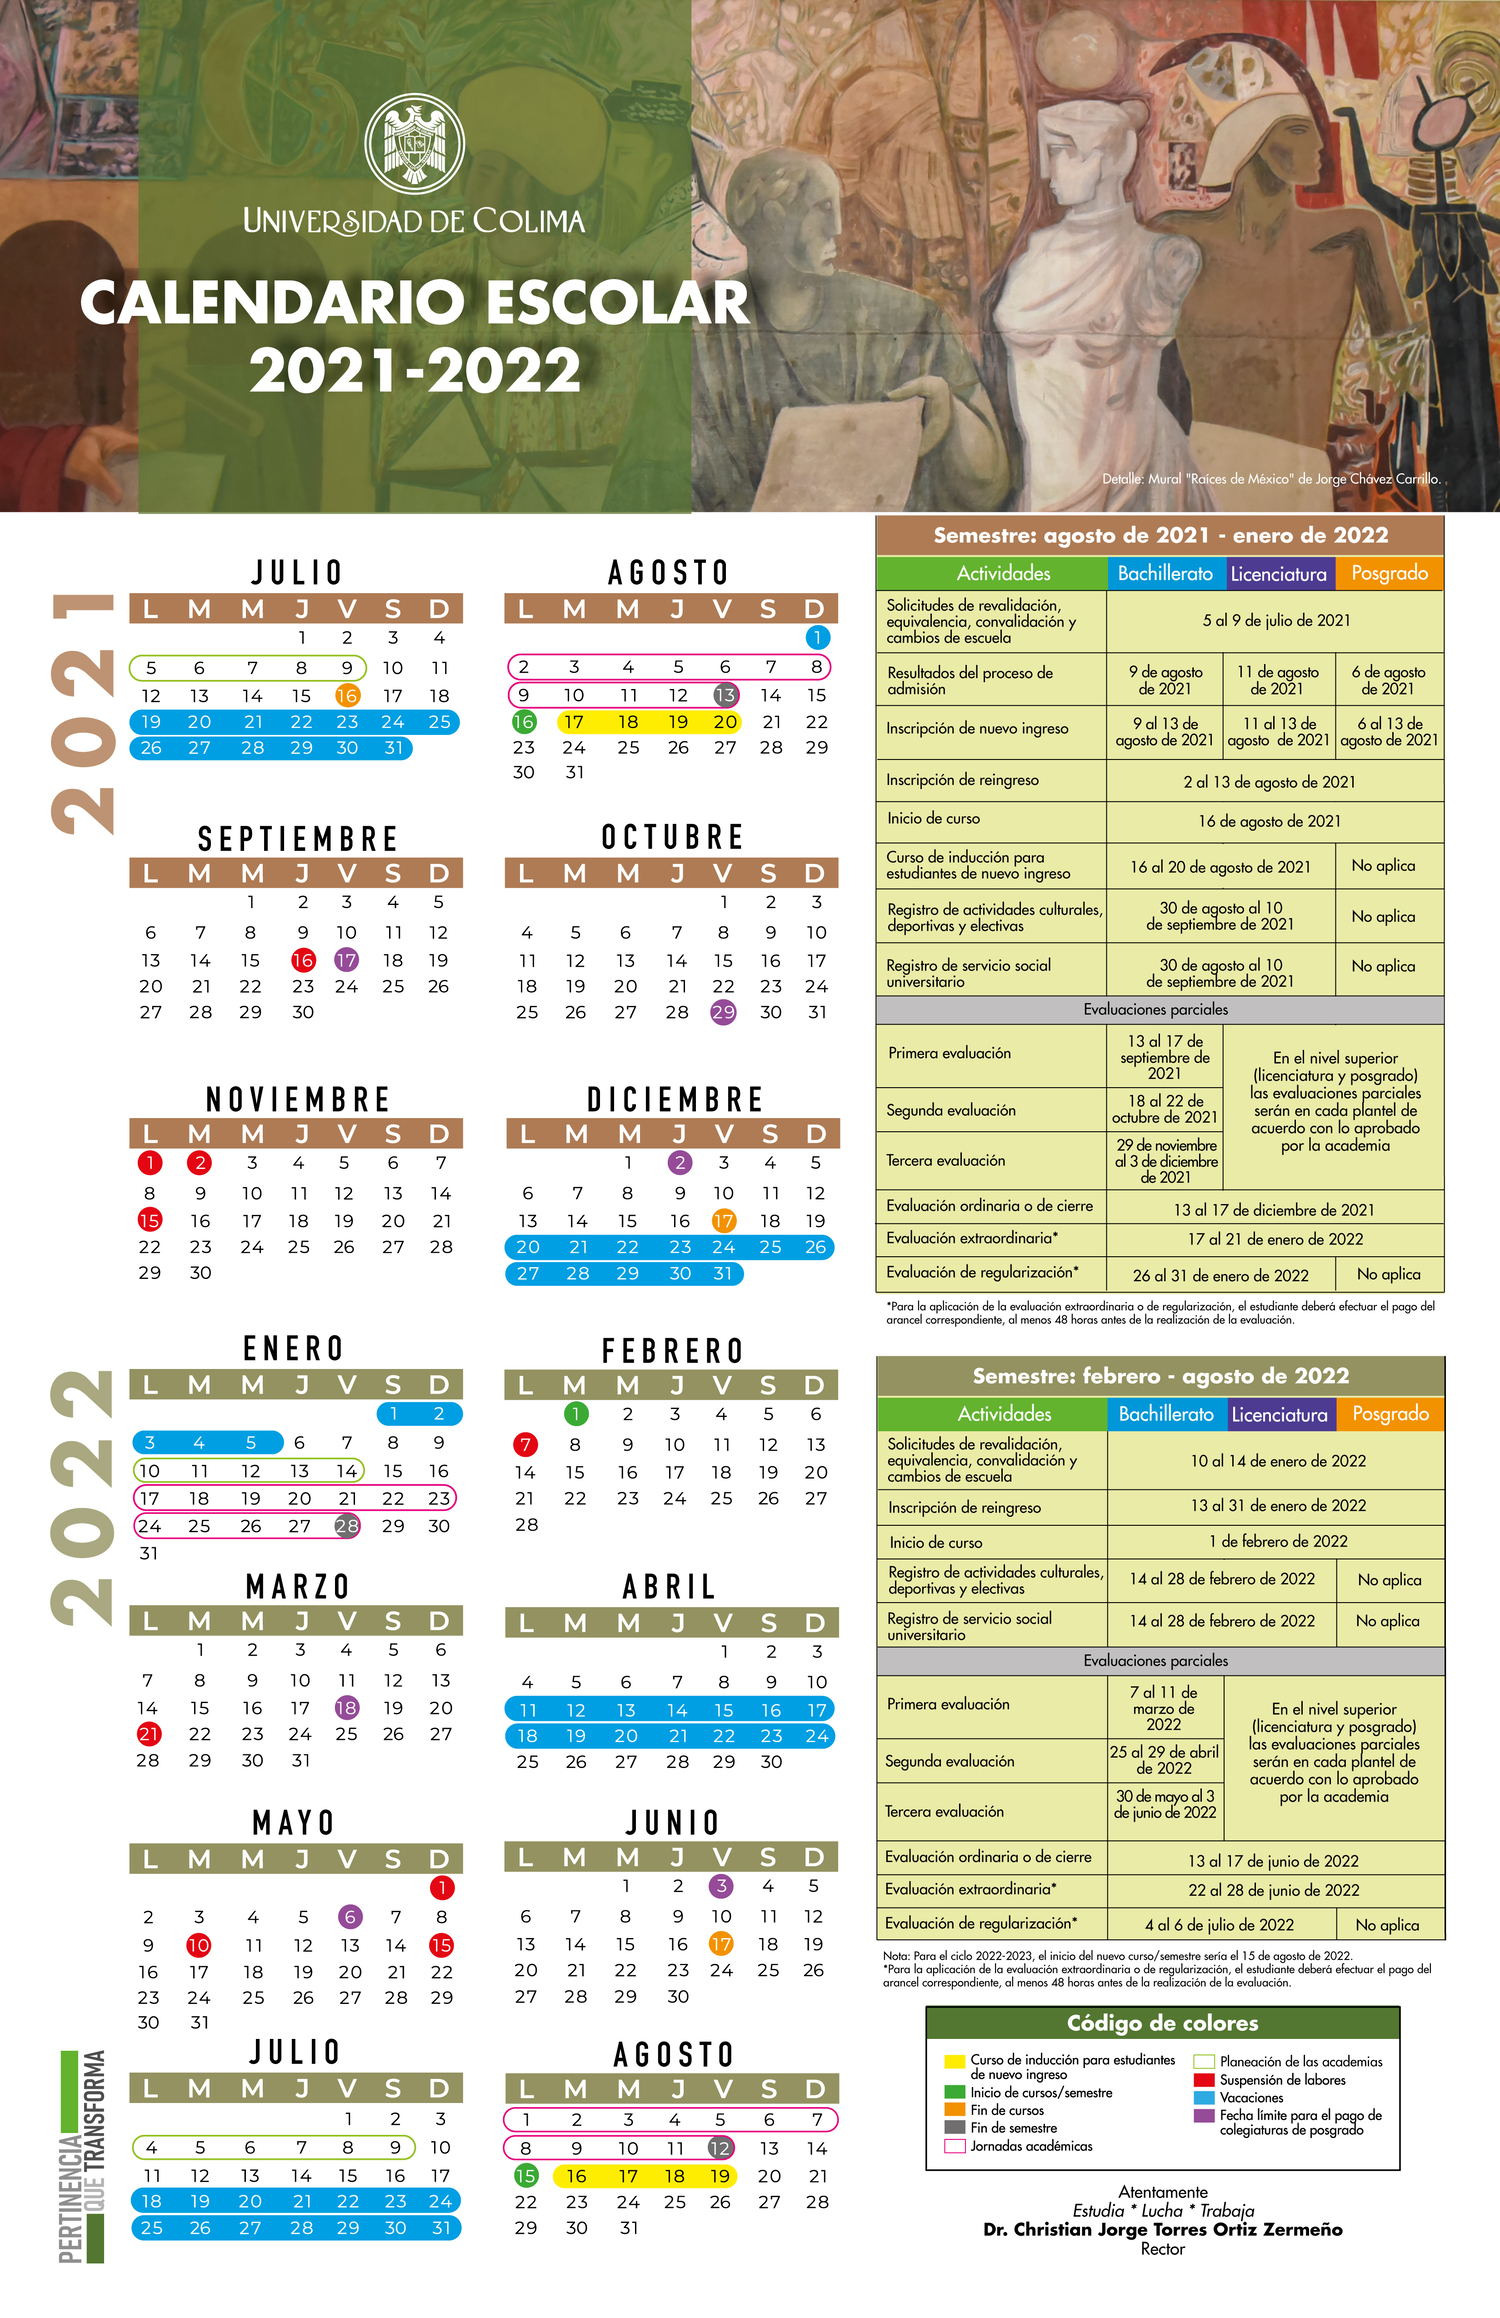 Universidad de Colima / Alumnos - Calendario escolar